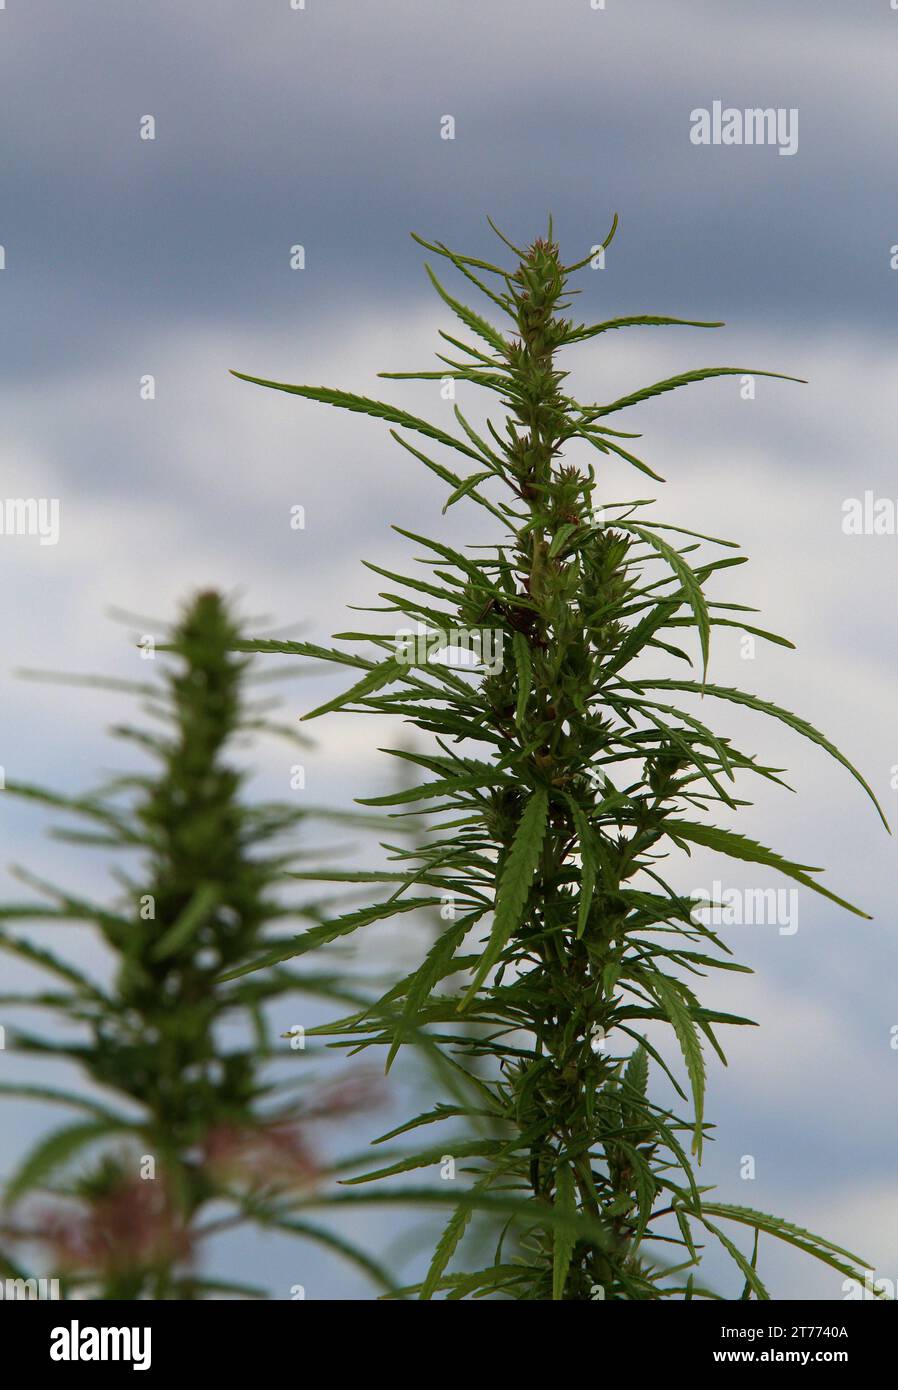 Têtes de cannabis de chanvre avec des têtes remplies de graines poussant en plein air photo stock Banque D'Images